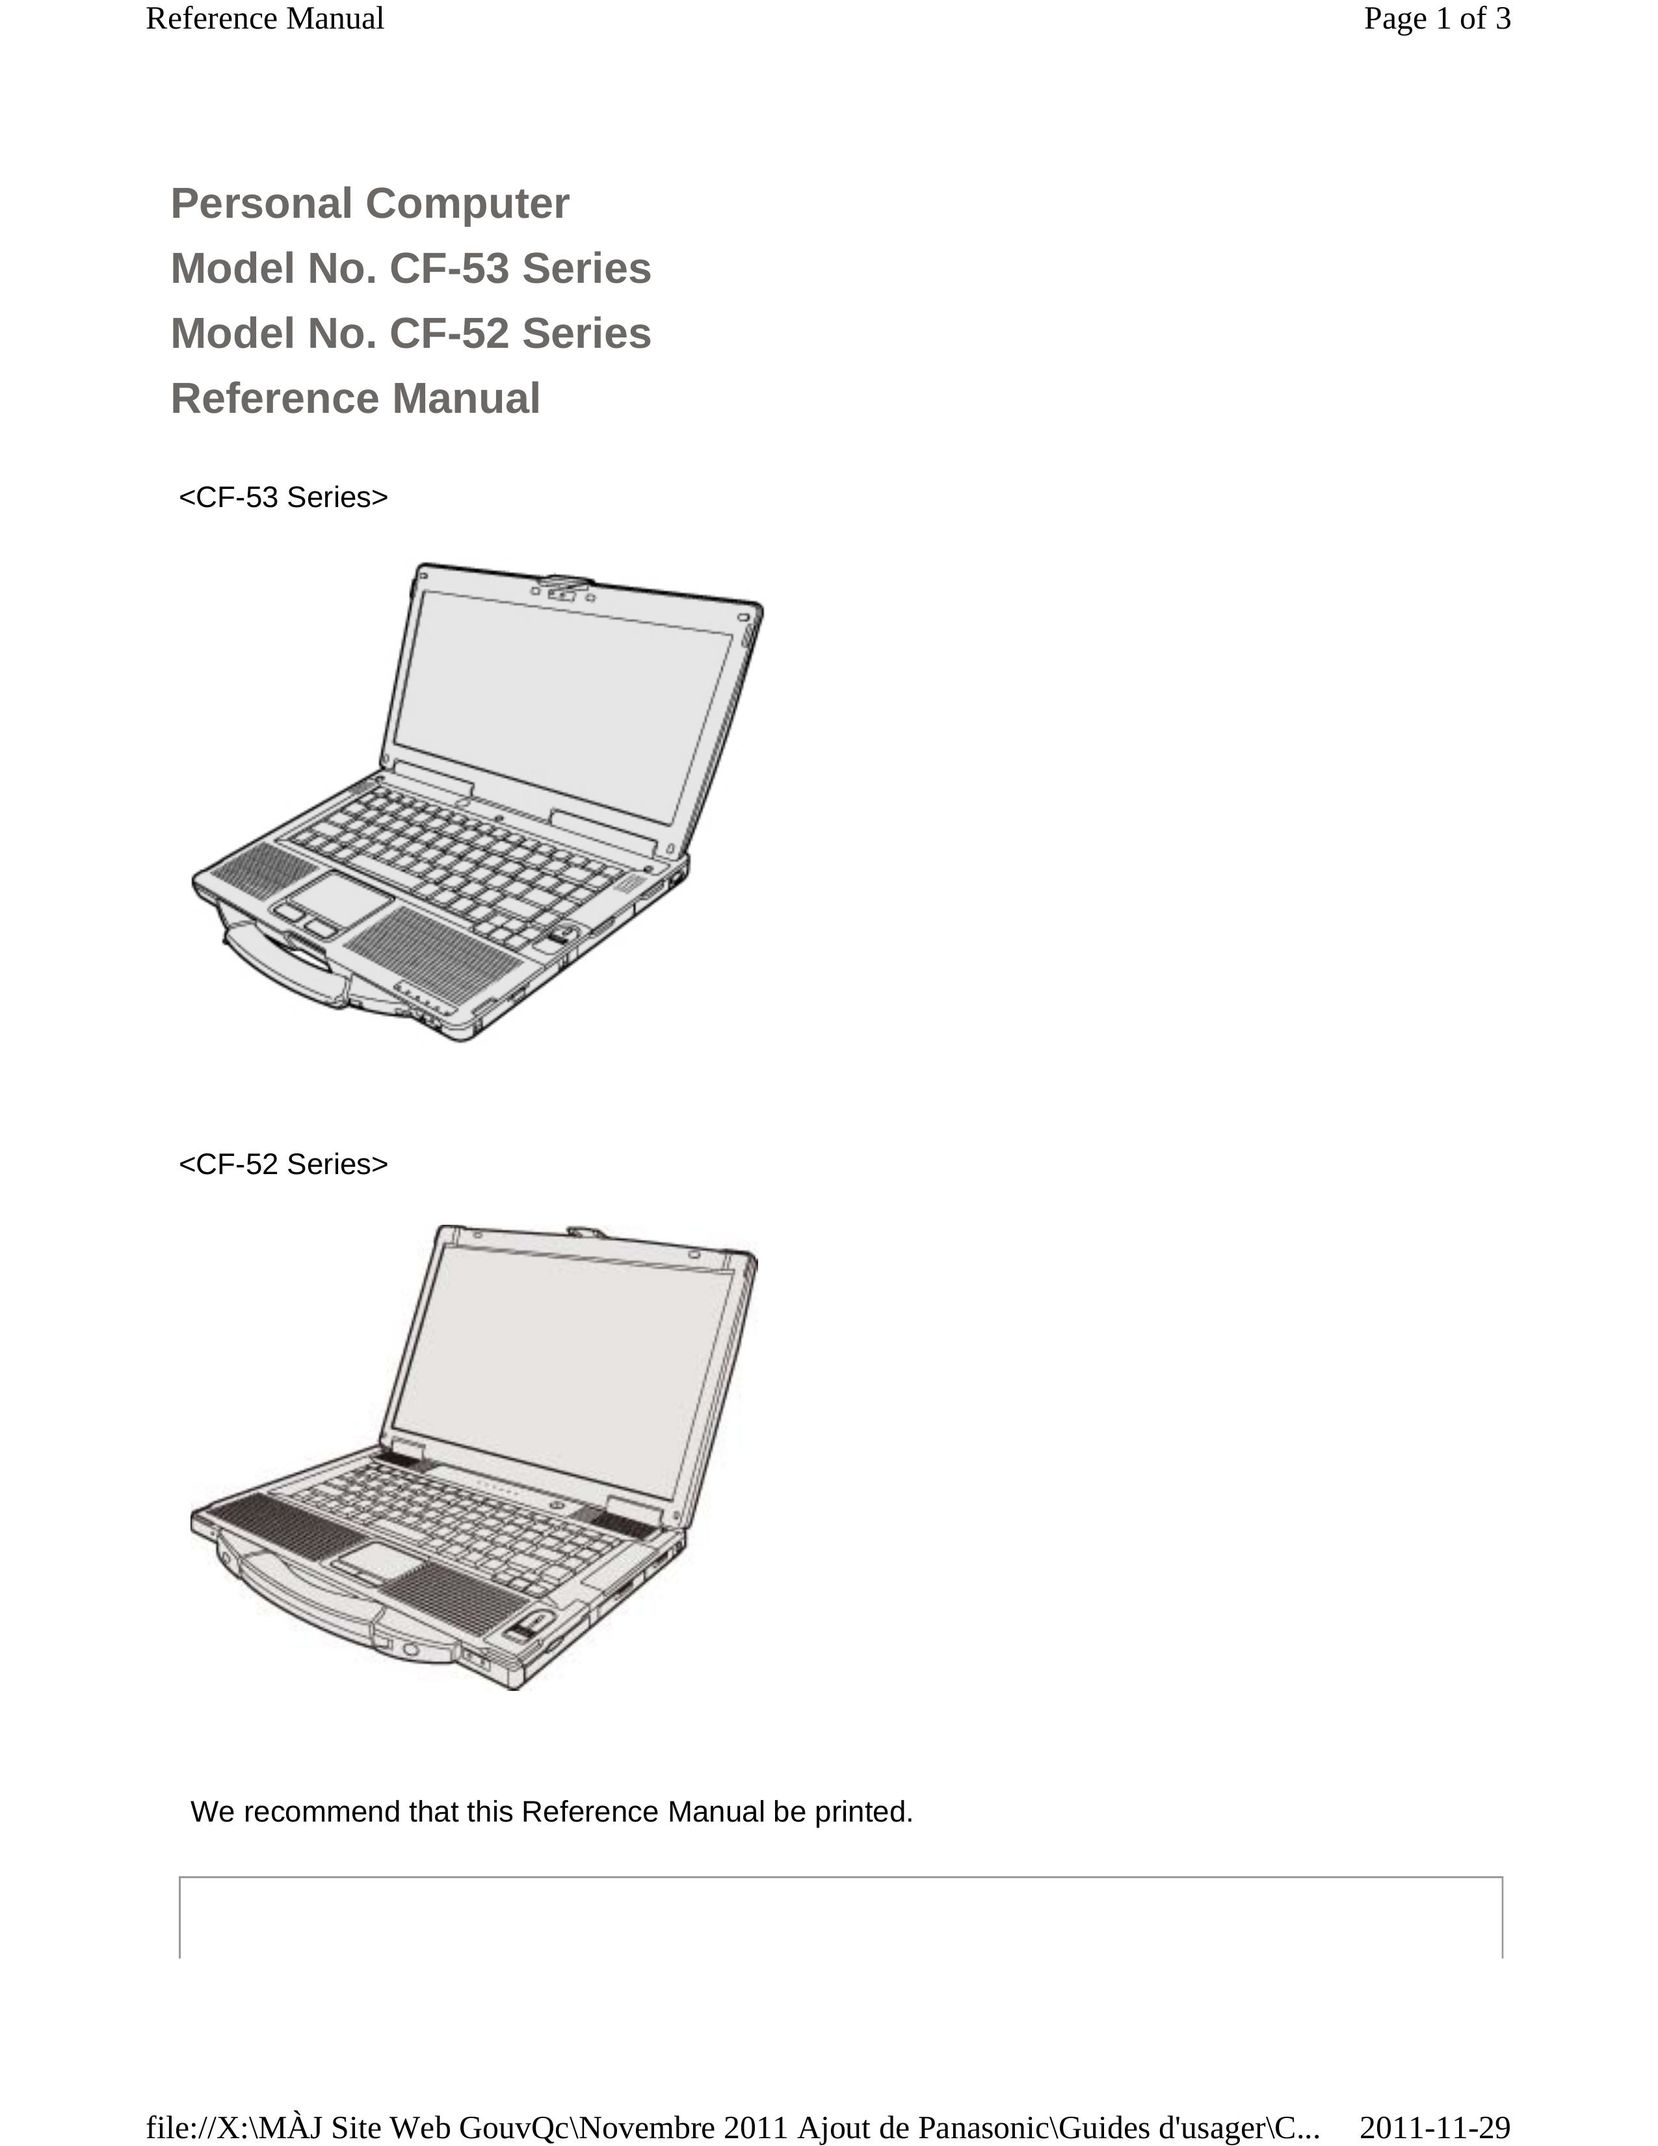 Panasonic CF-53ASUZX1M Laptop User Manual